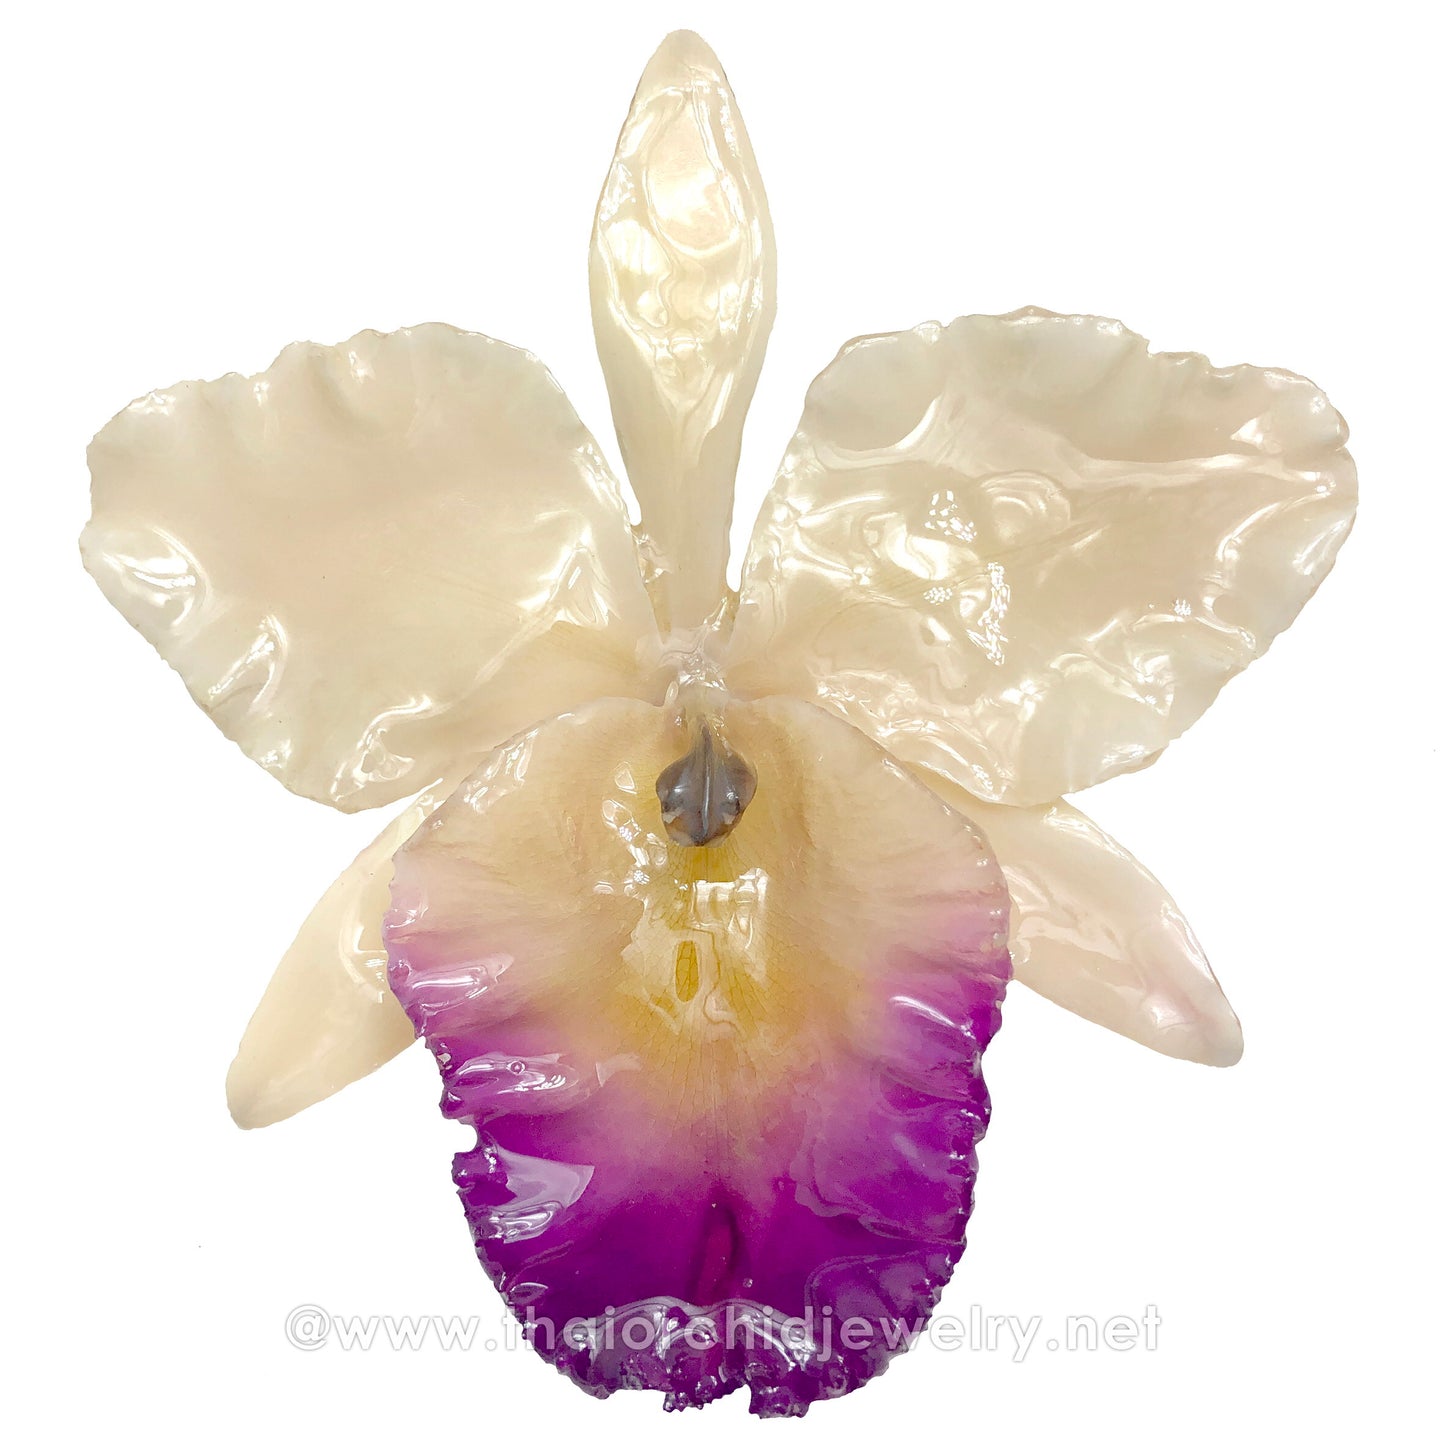 Cattleya Sakura "JUMBO" Orchid Jewelry Pendant (White/Cream)